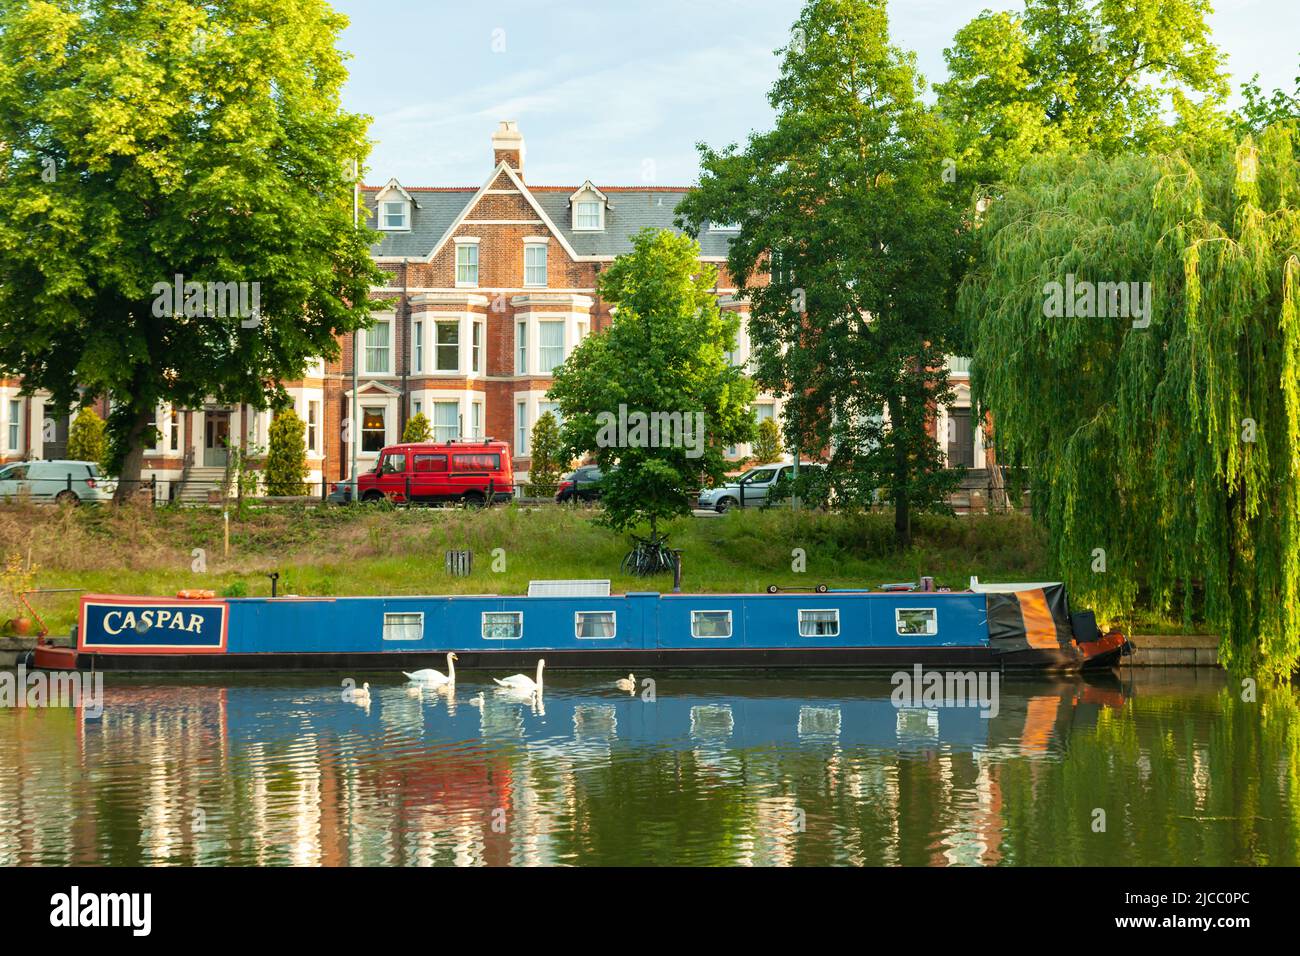 Casa galleggiante sul fiume Cam a Cambridge, Inghilterra. Foto Stock